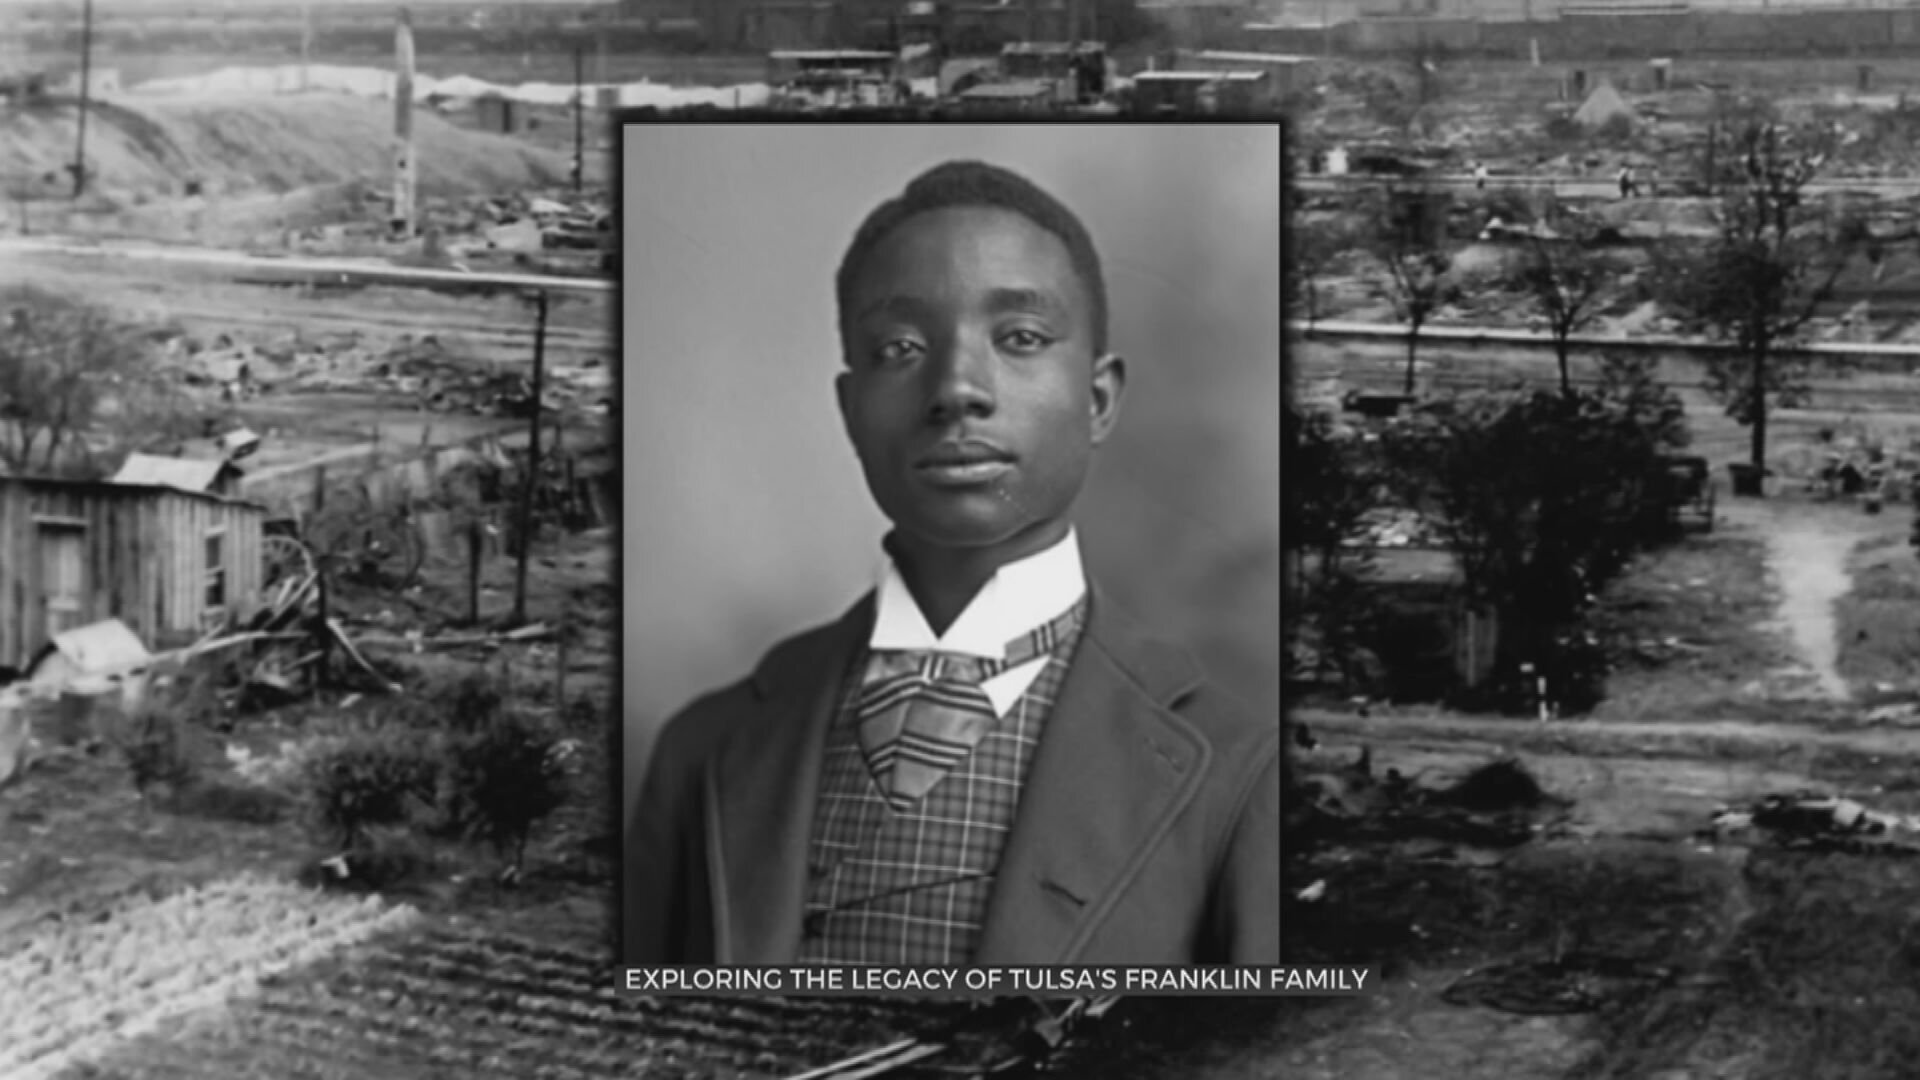 Franklin Family's Legacy In Tulsa